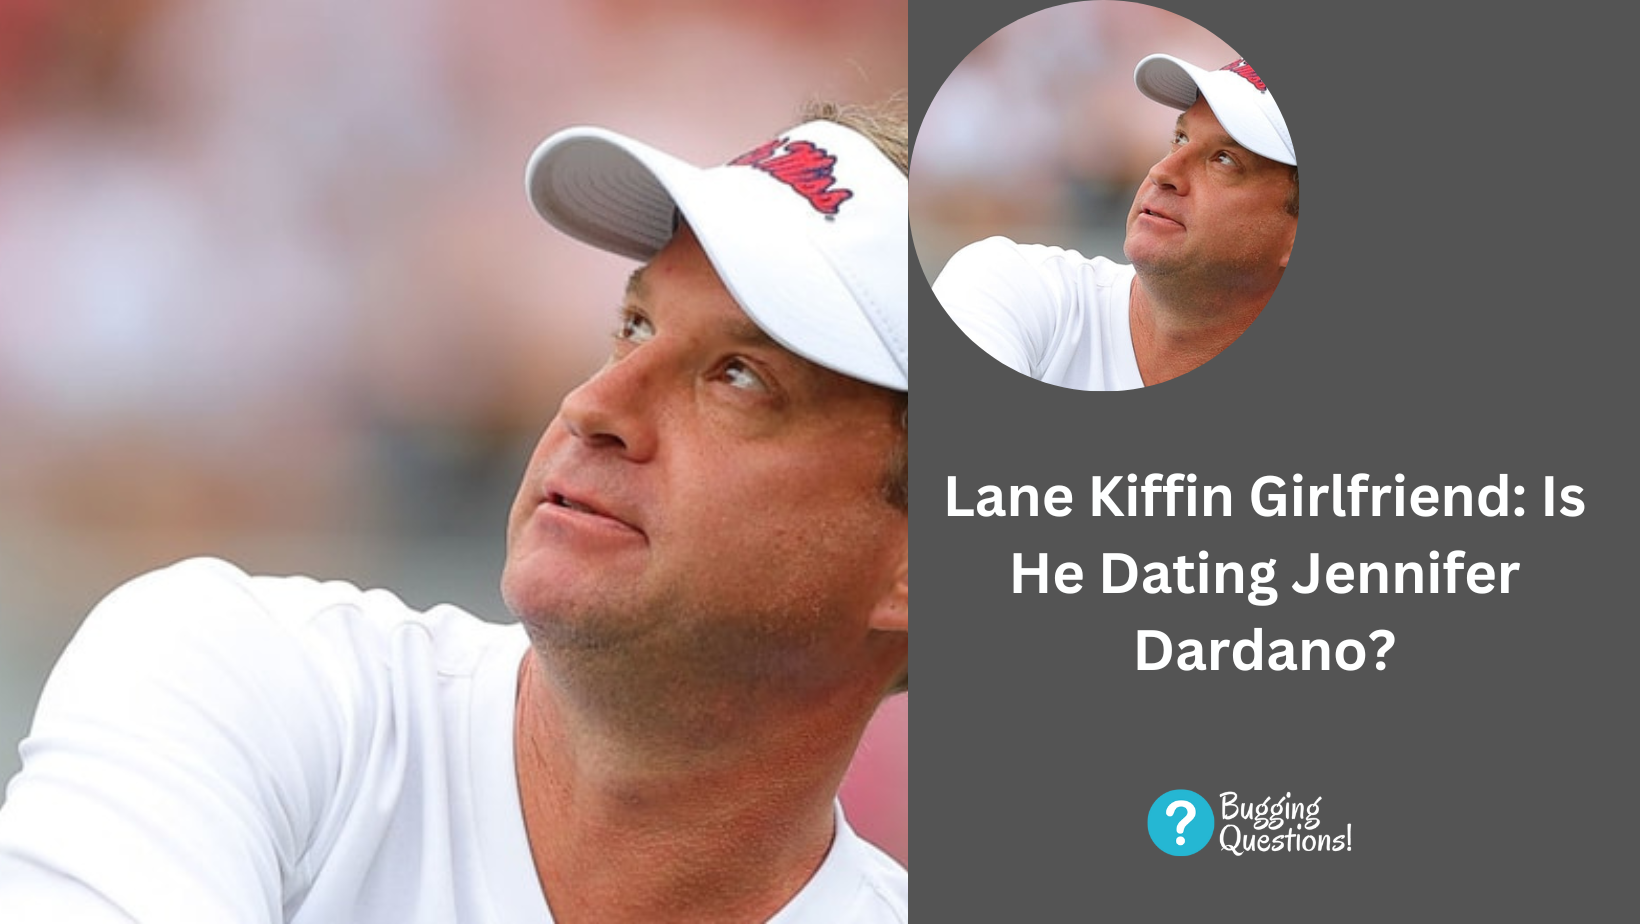 Lane Kiffin Girlfriend: Is He Dating Jennifer Dardano?